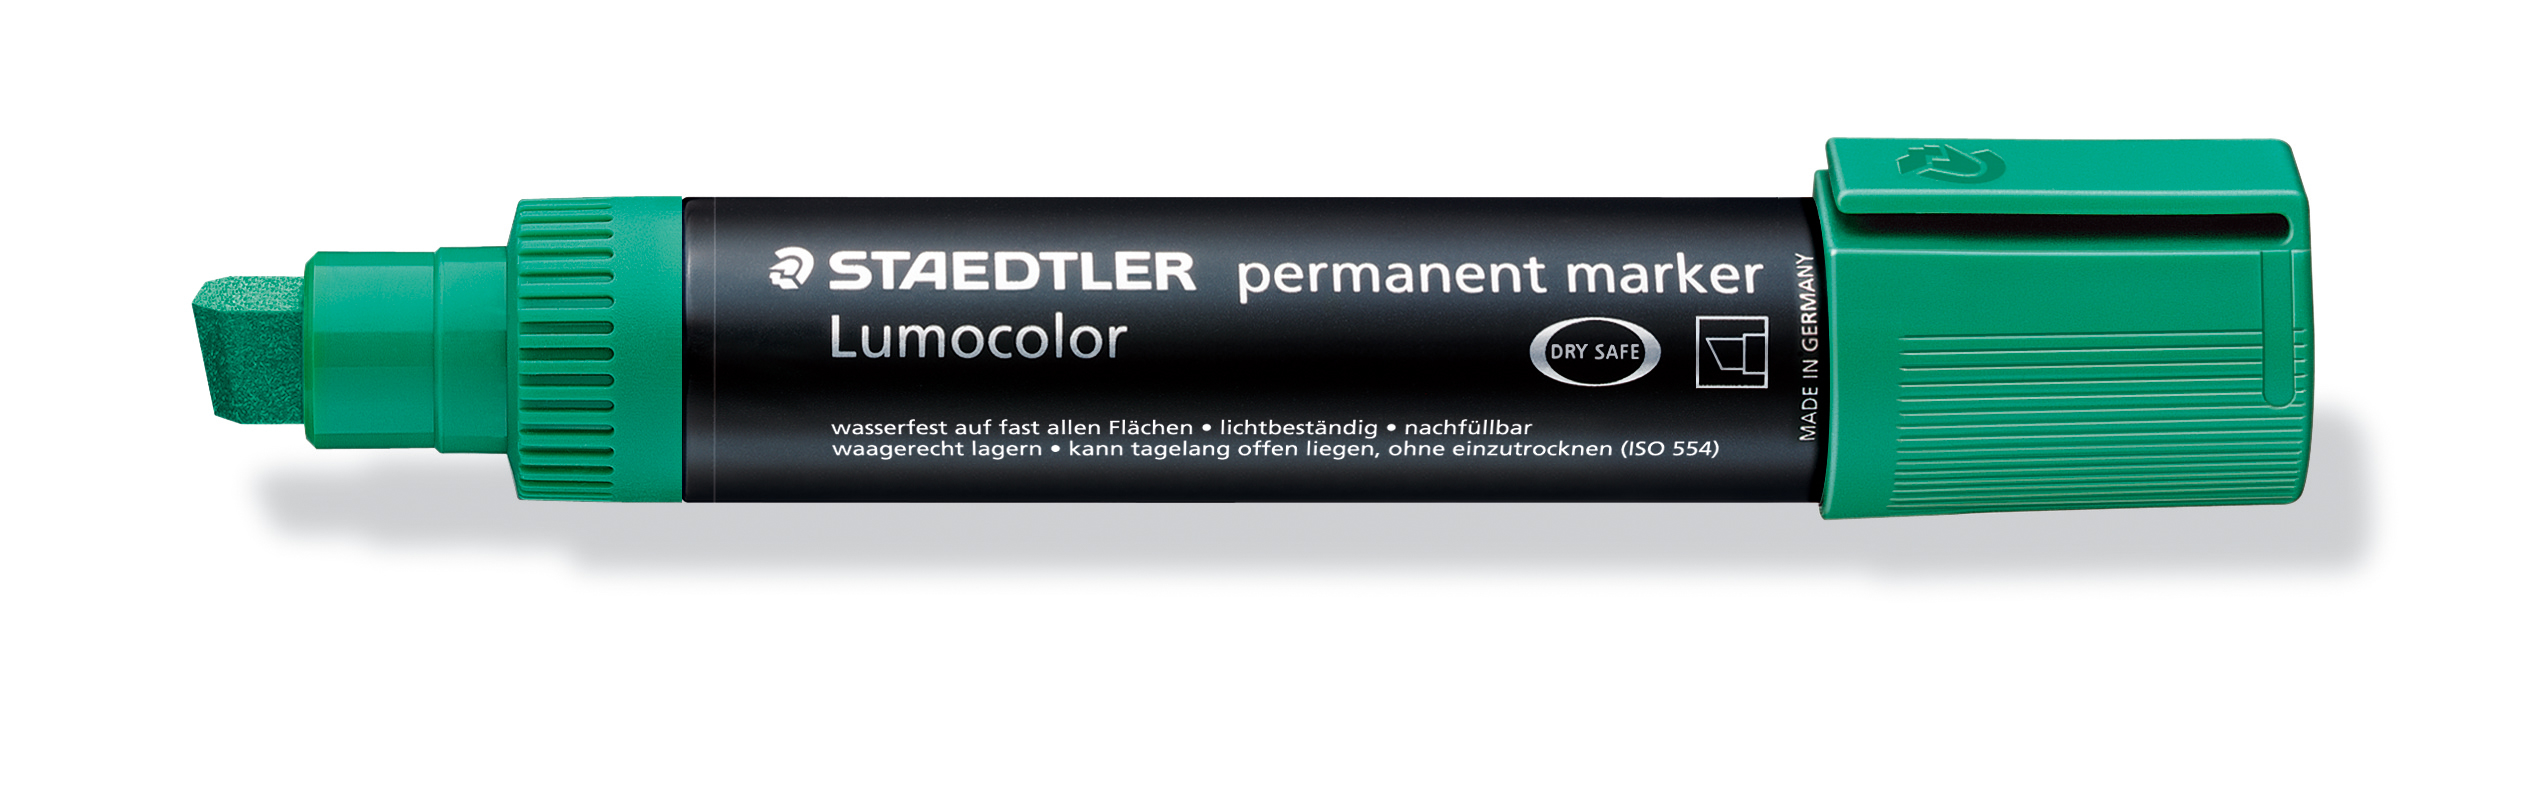 STAEDTLER Permanent Marker 2-12mm 388-5 vert